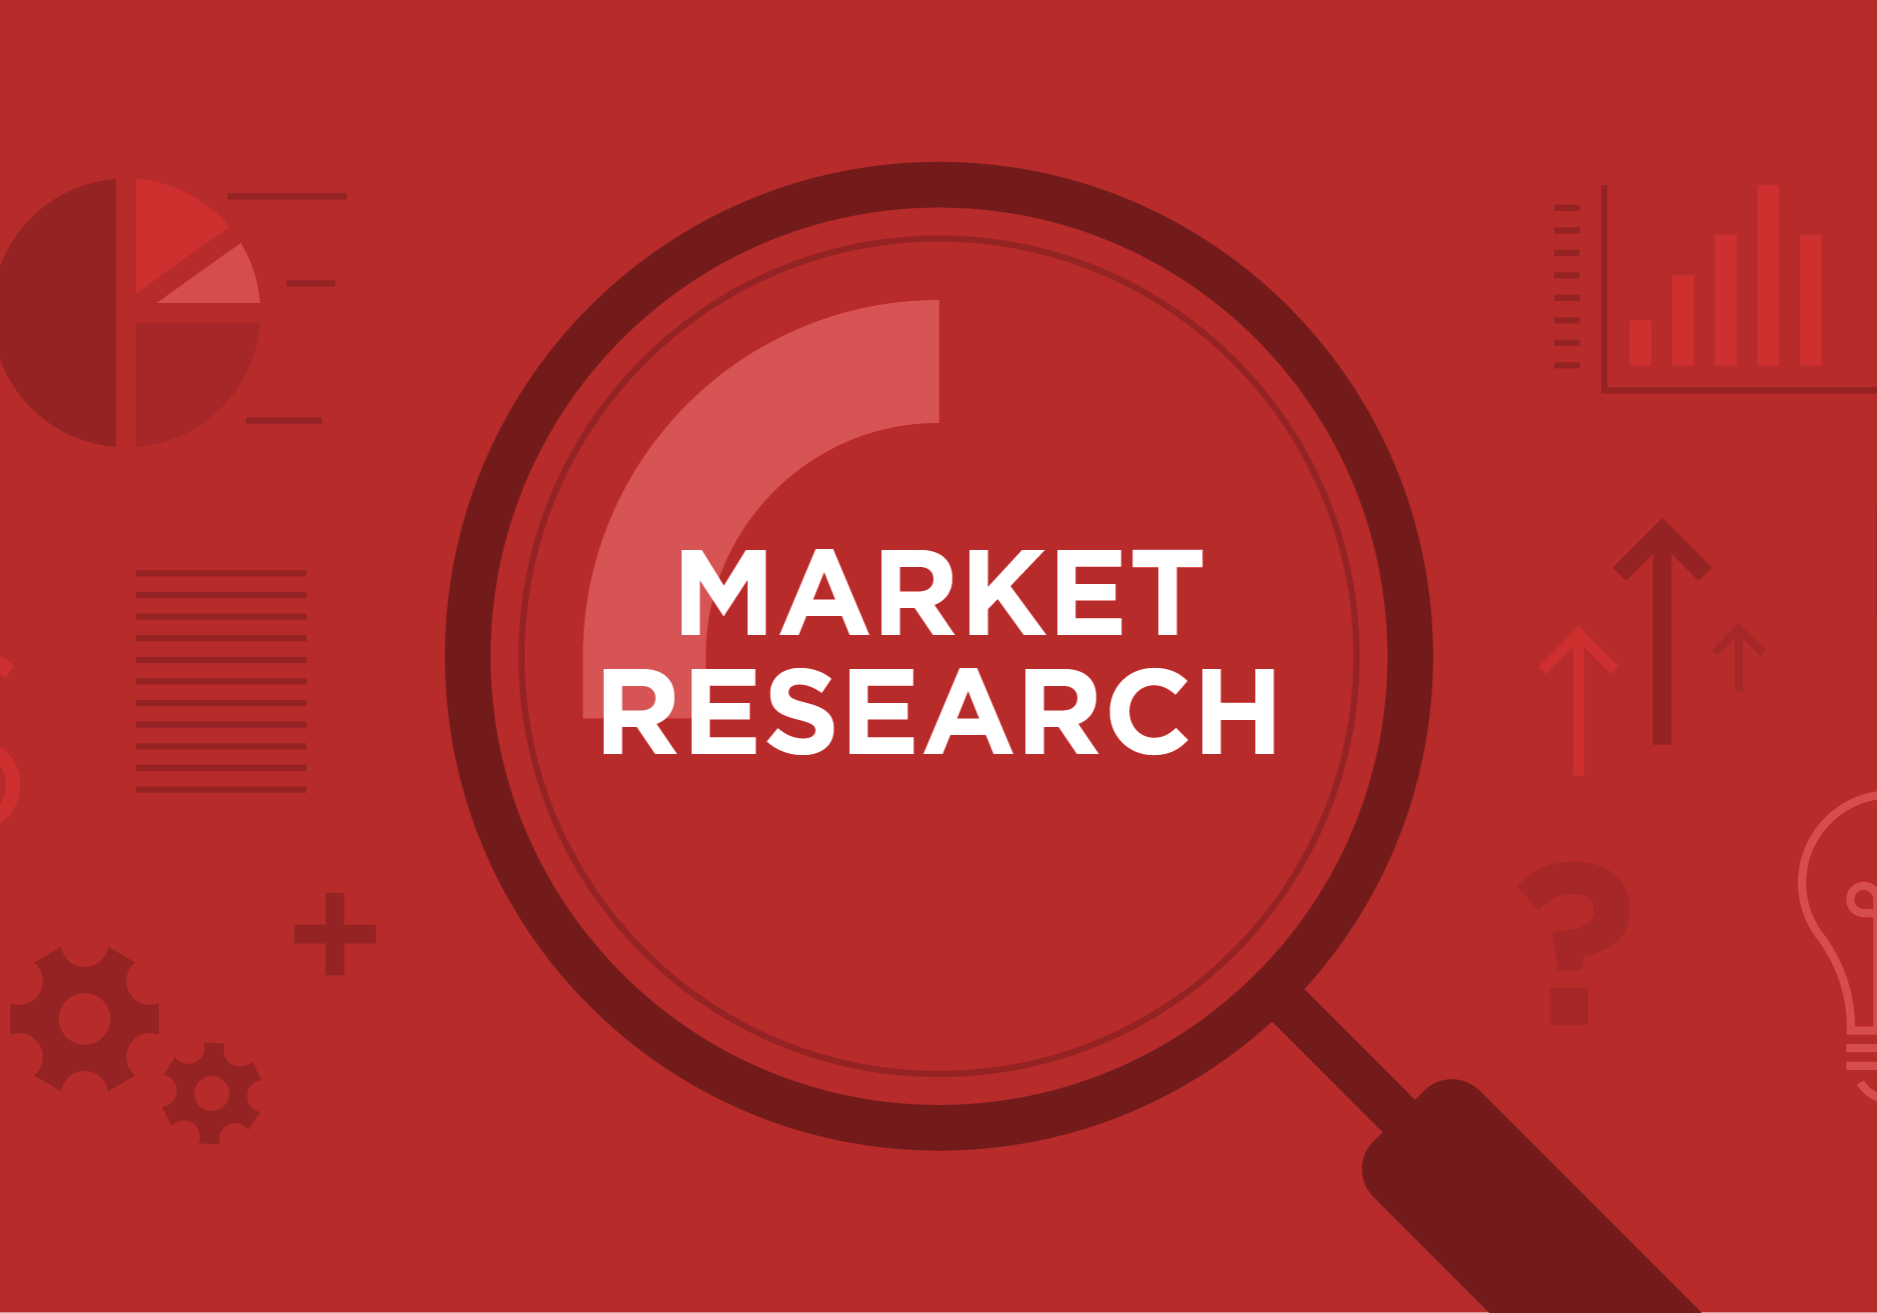 cm-market research-1